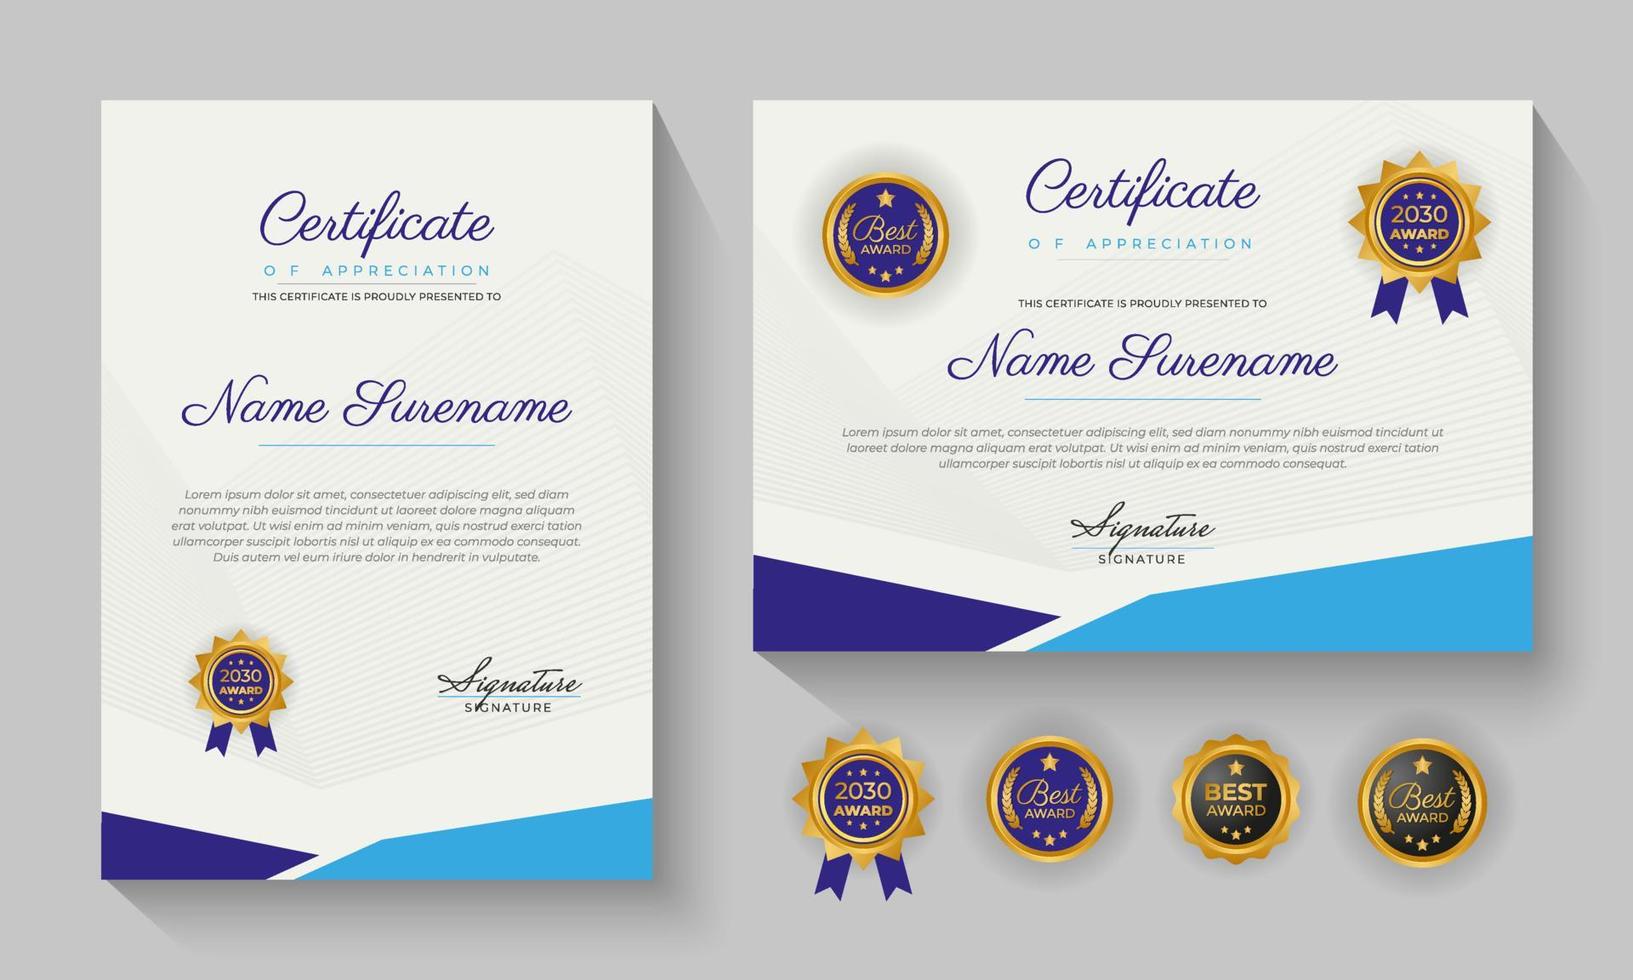 certificado azul moderno de logro o certificación de diseño de plantilla de reconocimiento vector